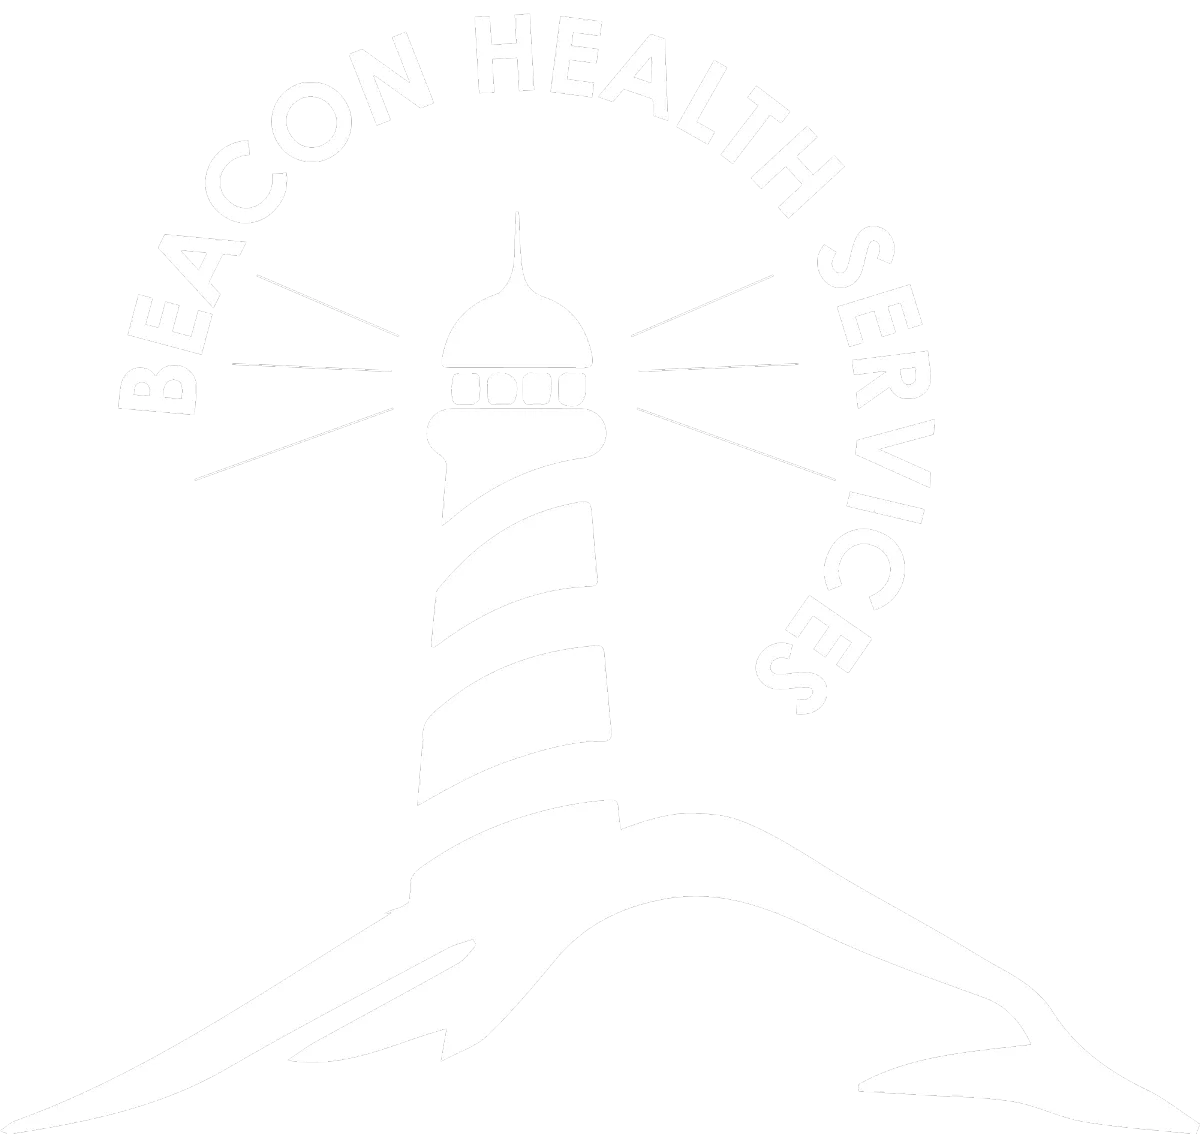 Beacon Health Services